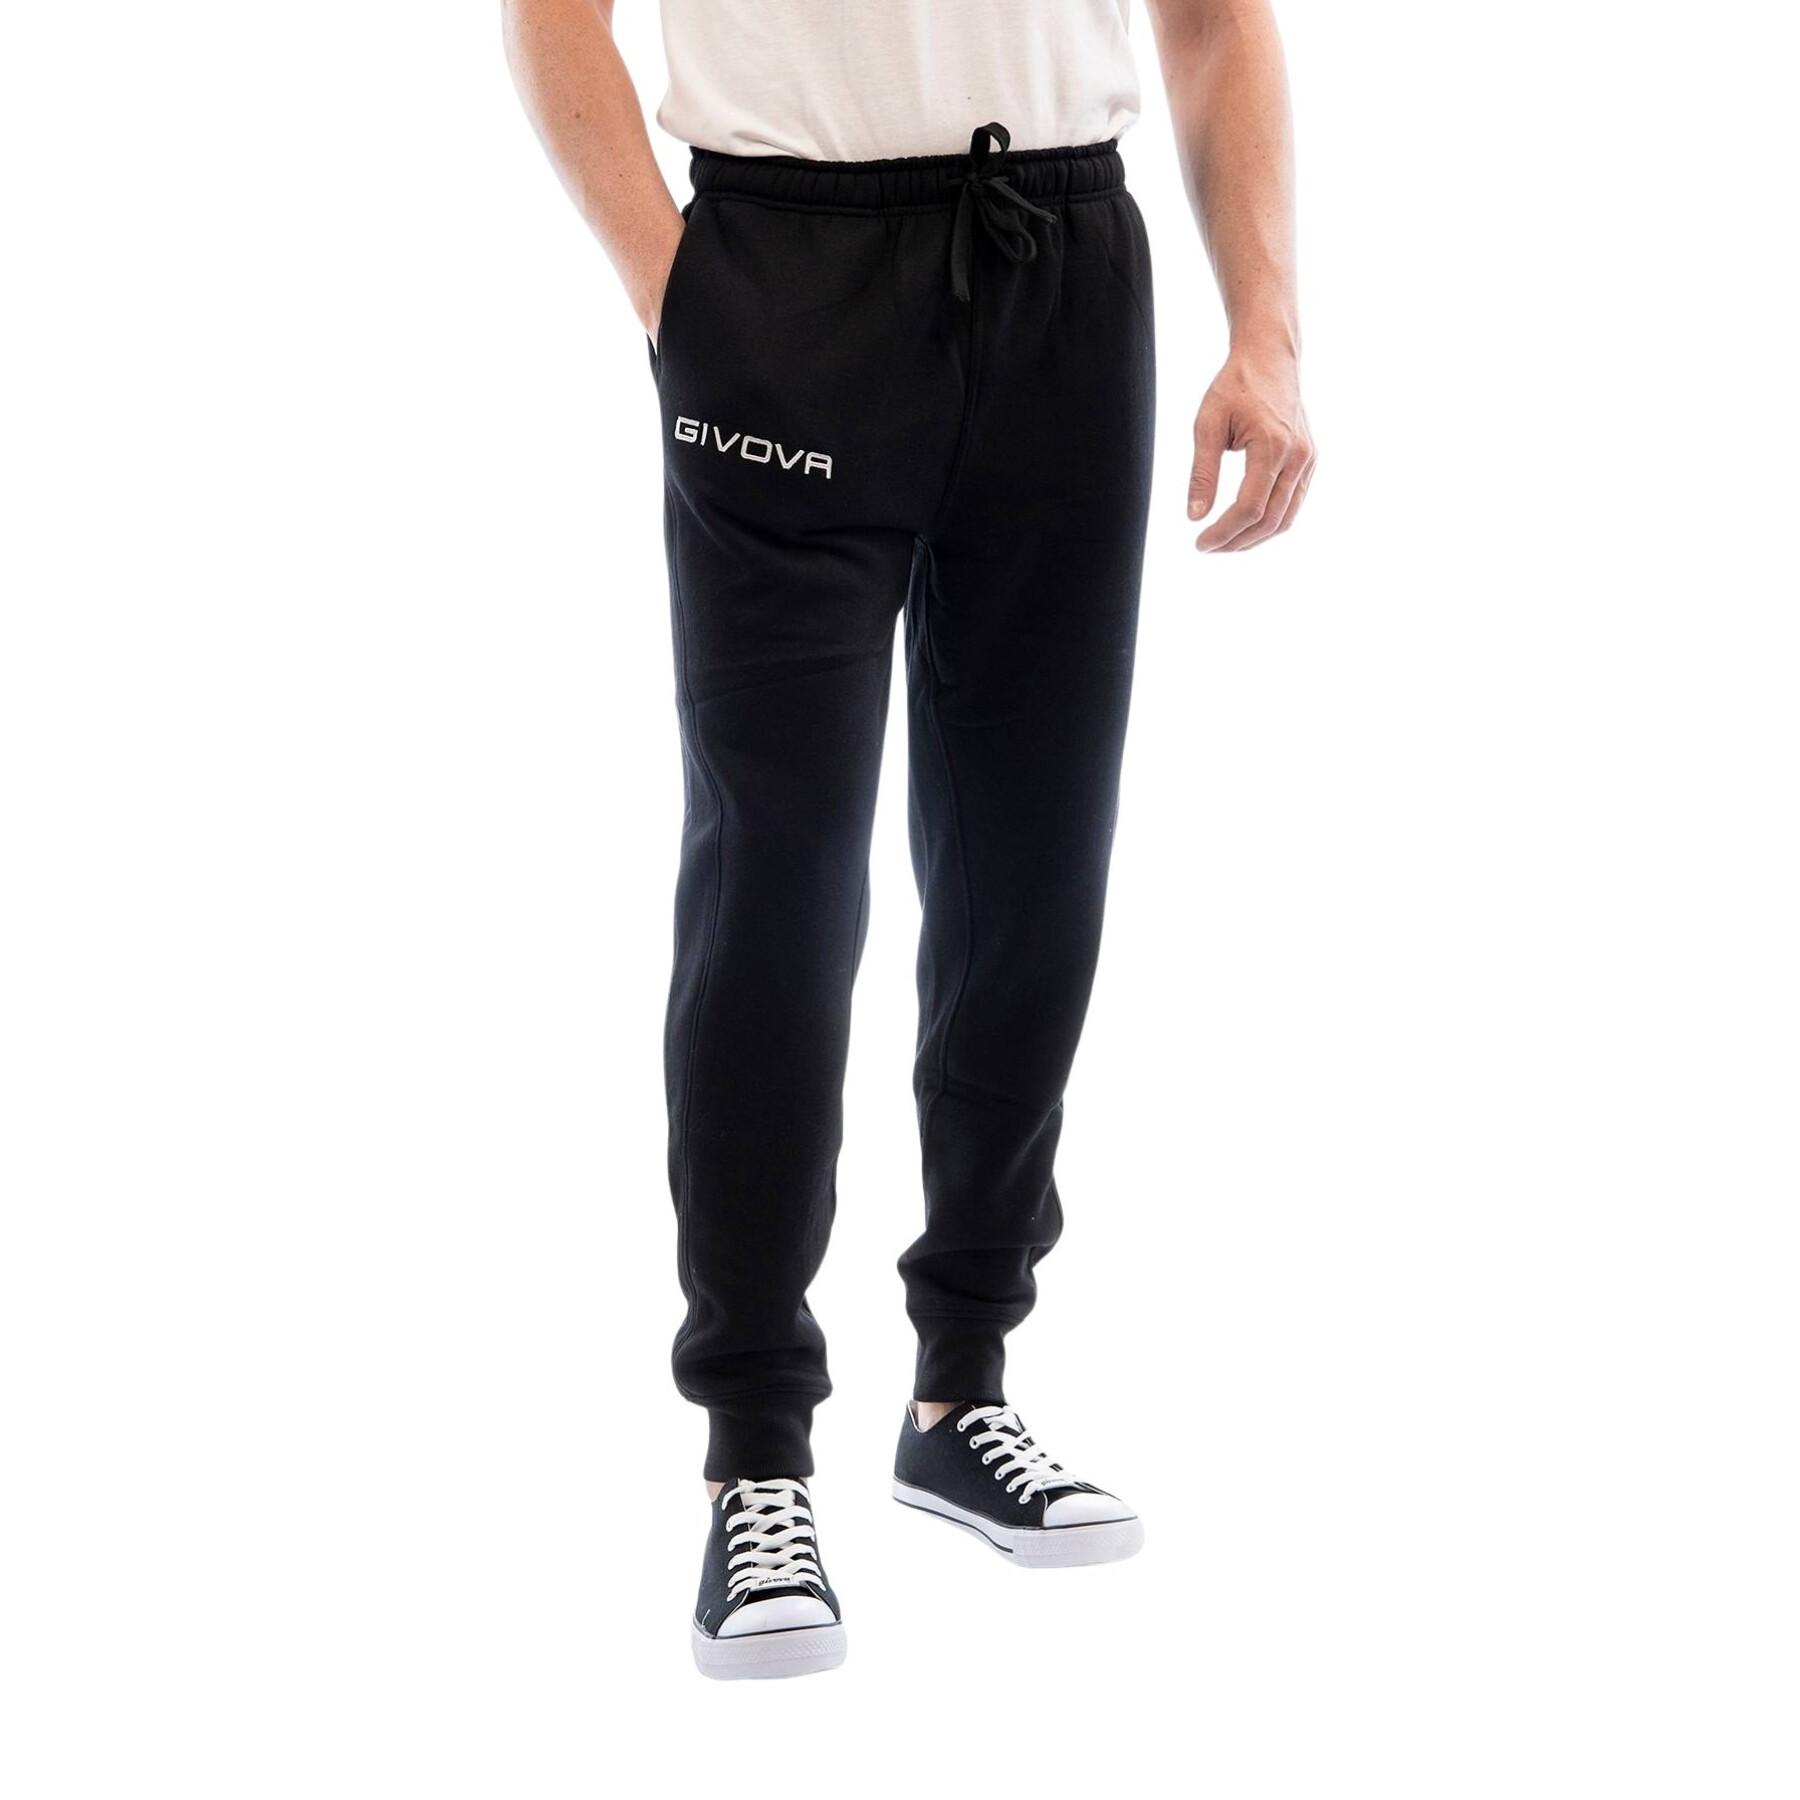 Pantalón de chándal Givova Révolution - Pantalones - Lifestyle Hombre -  Lifestyle